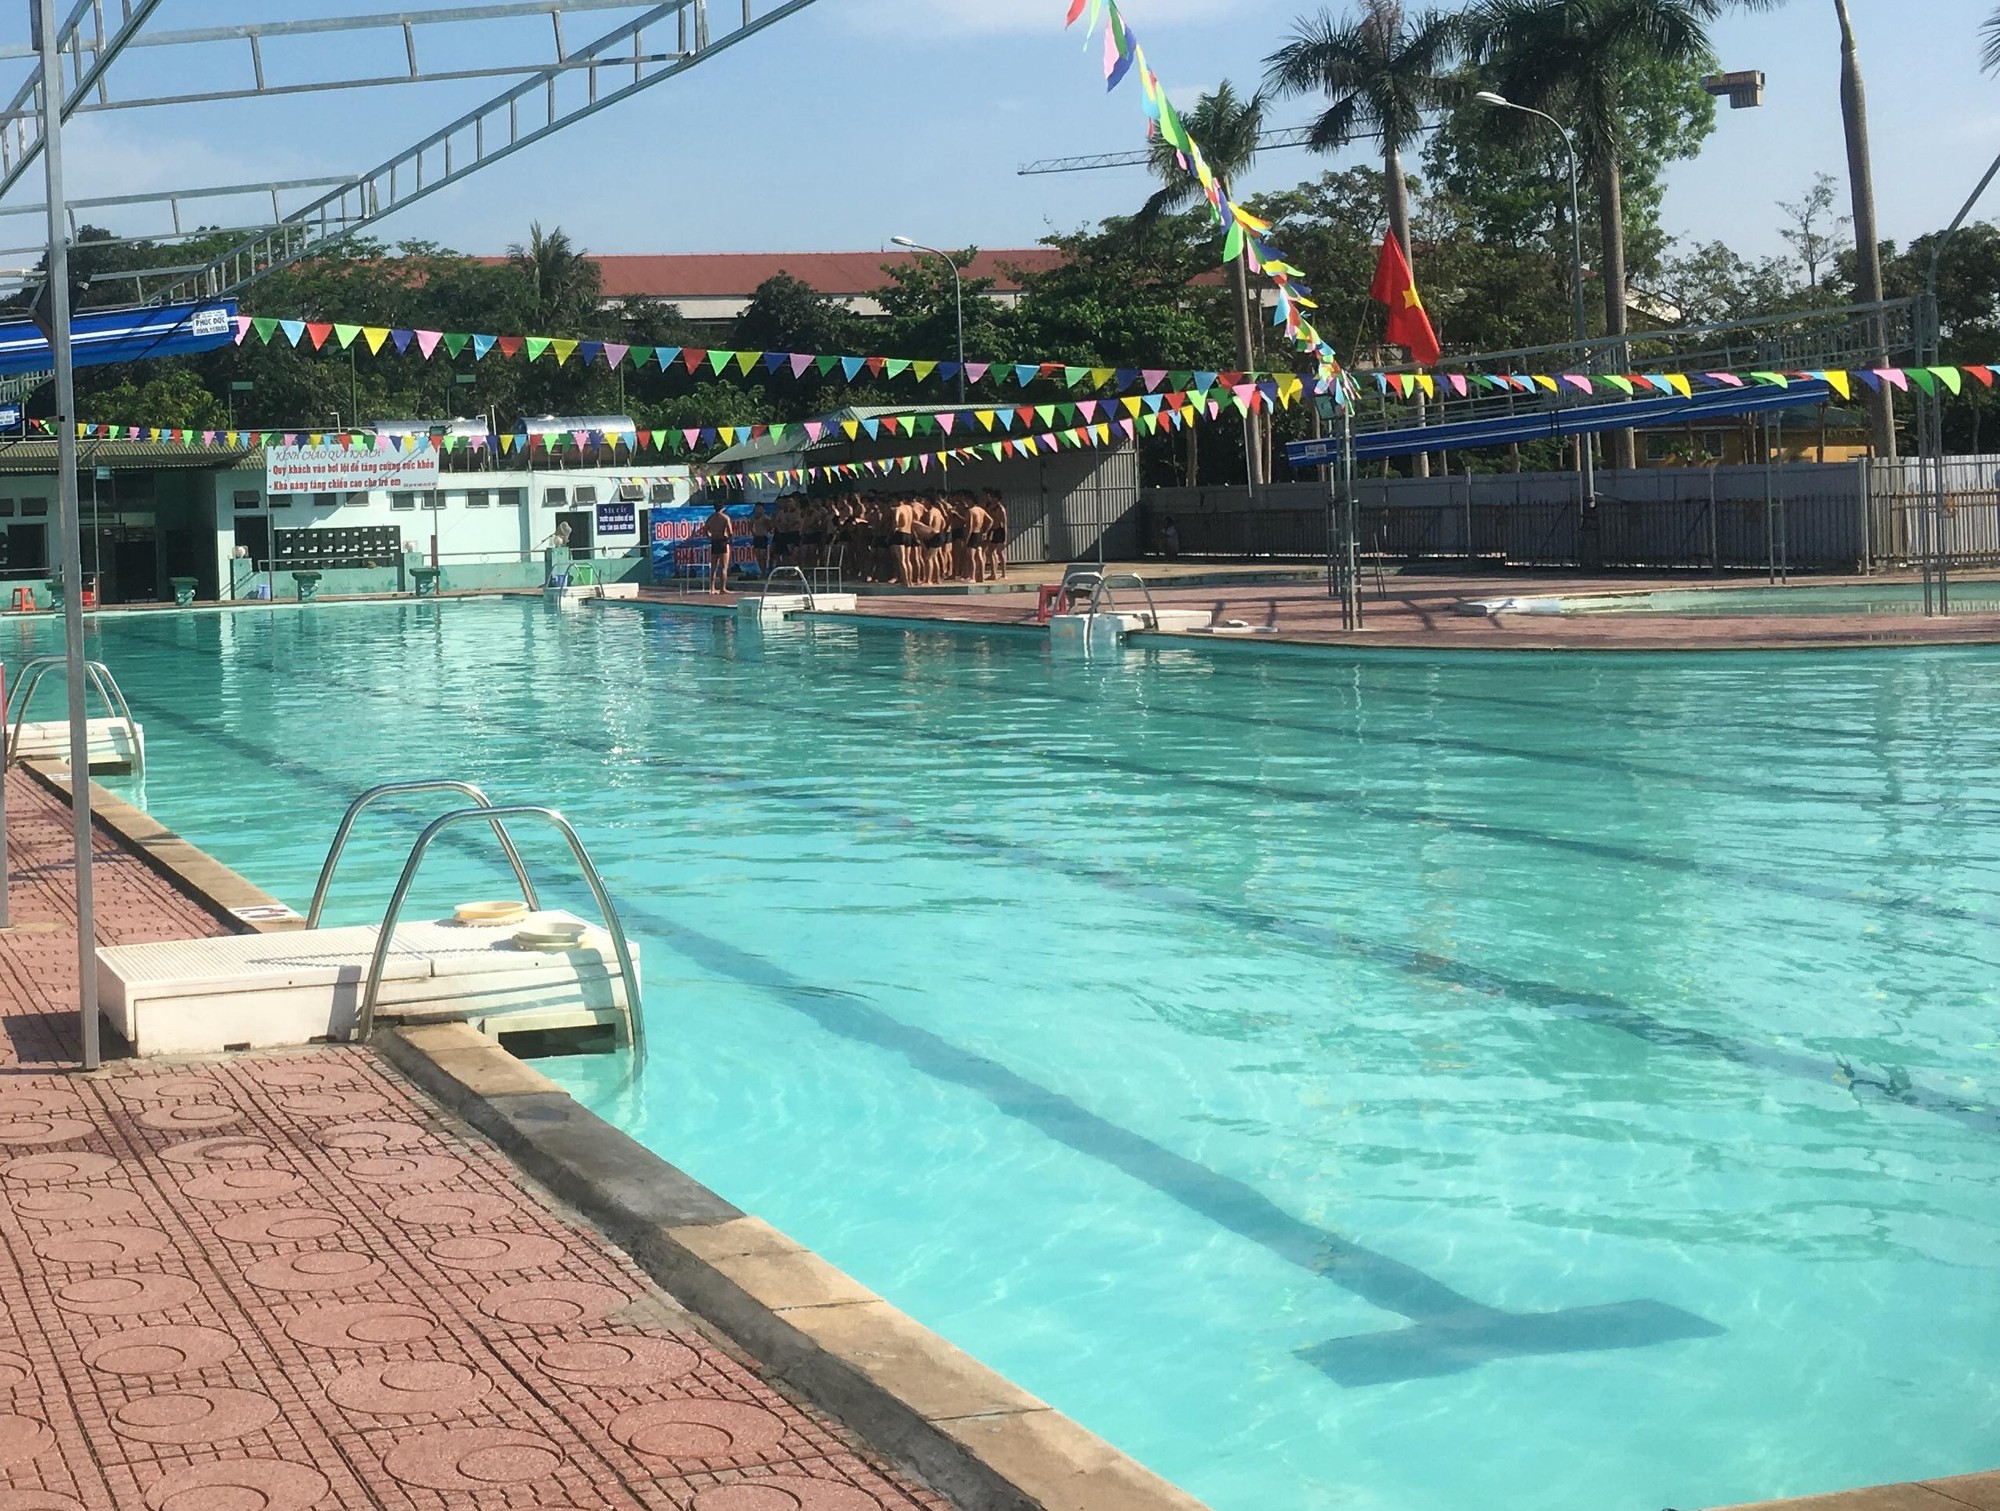 Tắm Bể Bơi, 1 Phụ Nữ Bất Ngờ Bị Điện Giật Nhập Viện - Báo Người Lao Động